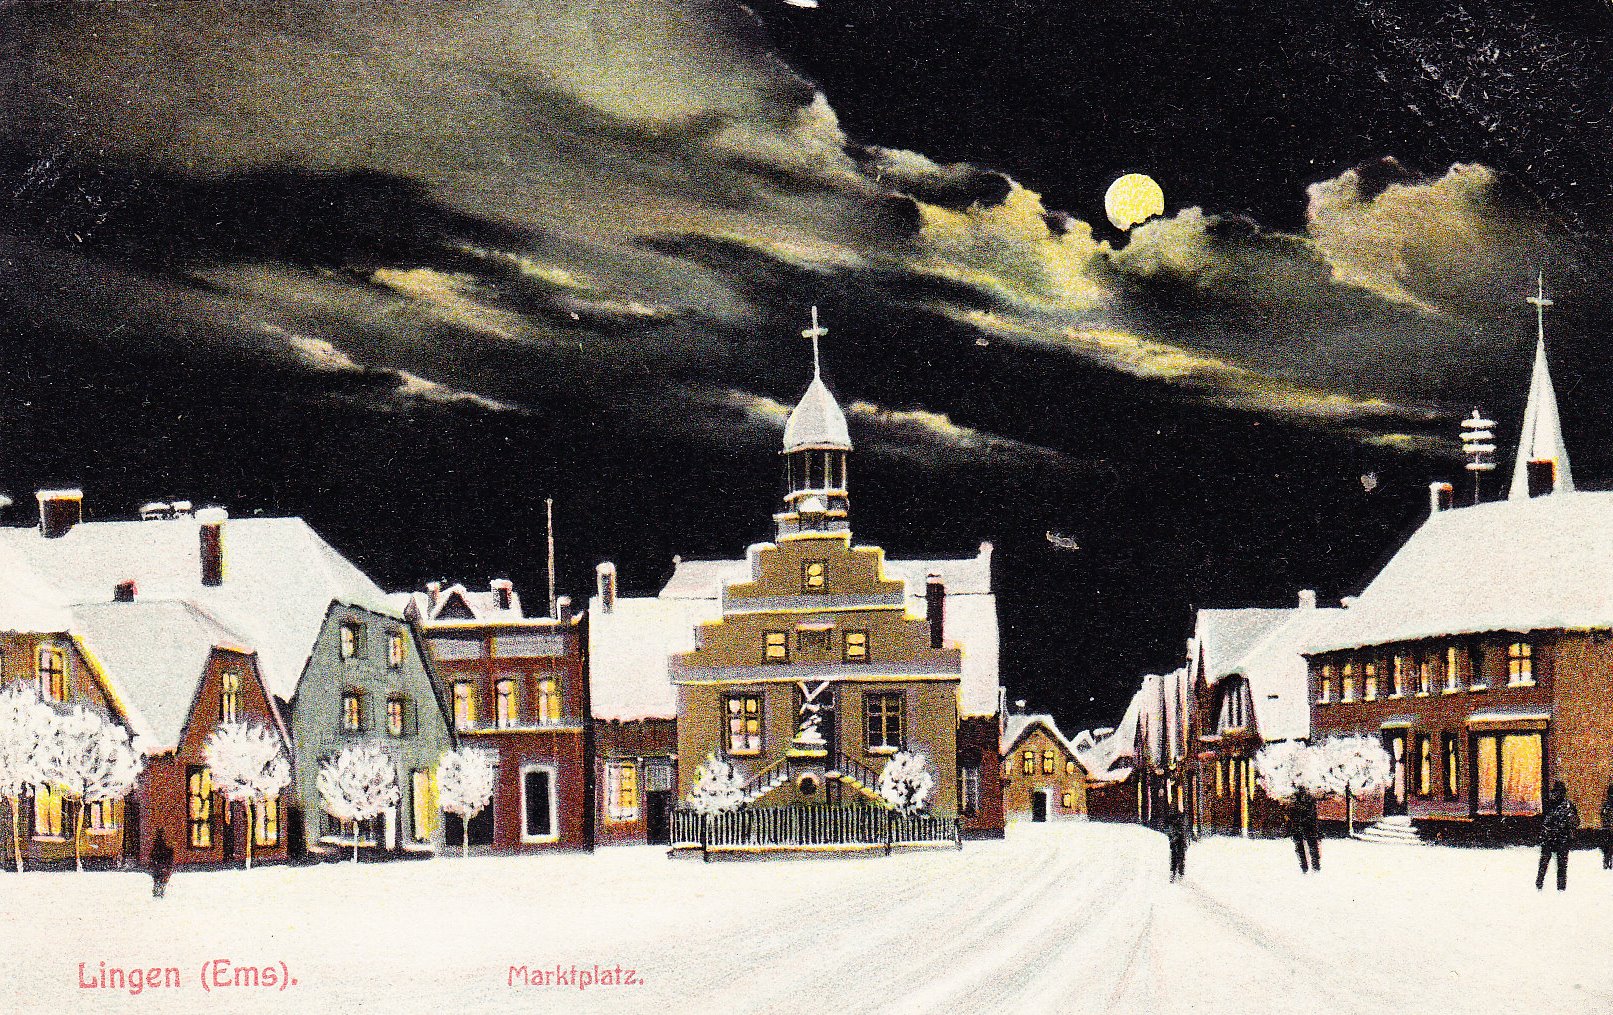 Der eingeschneite Lingener Marktplatz bei Nacht. Postkarte von 1908.